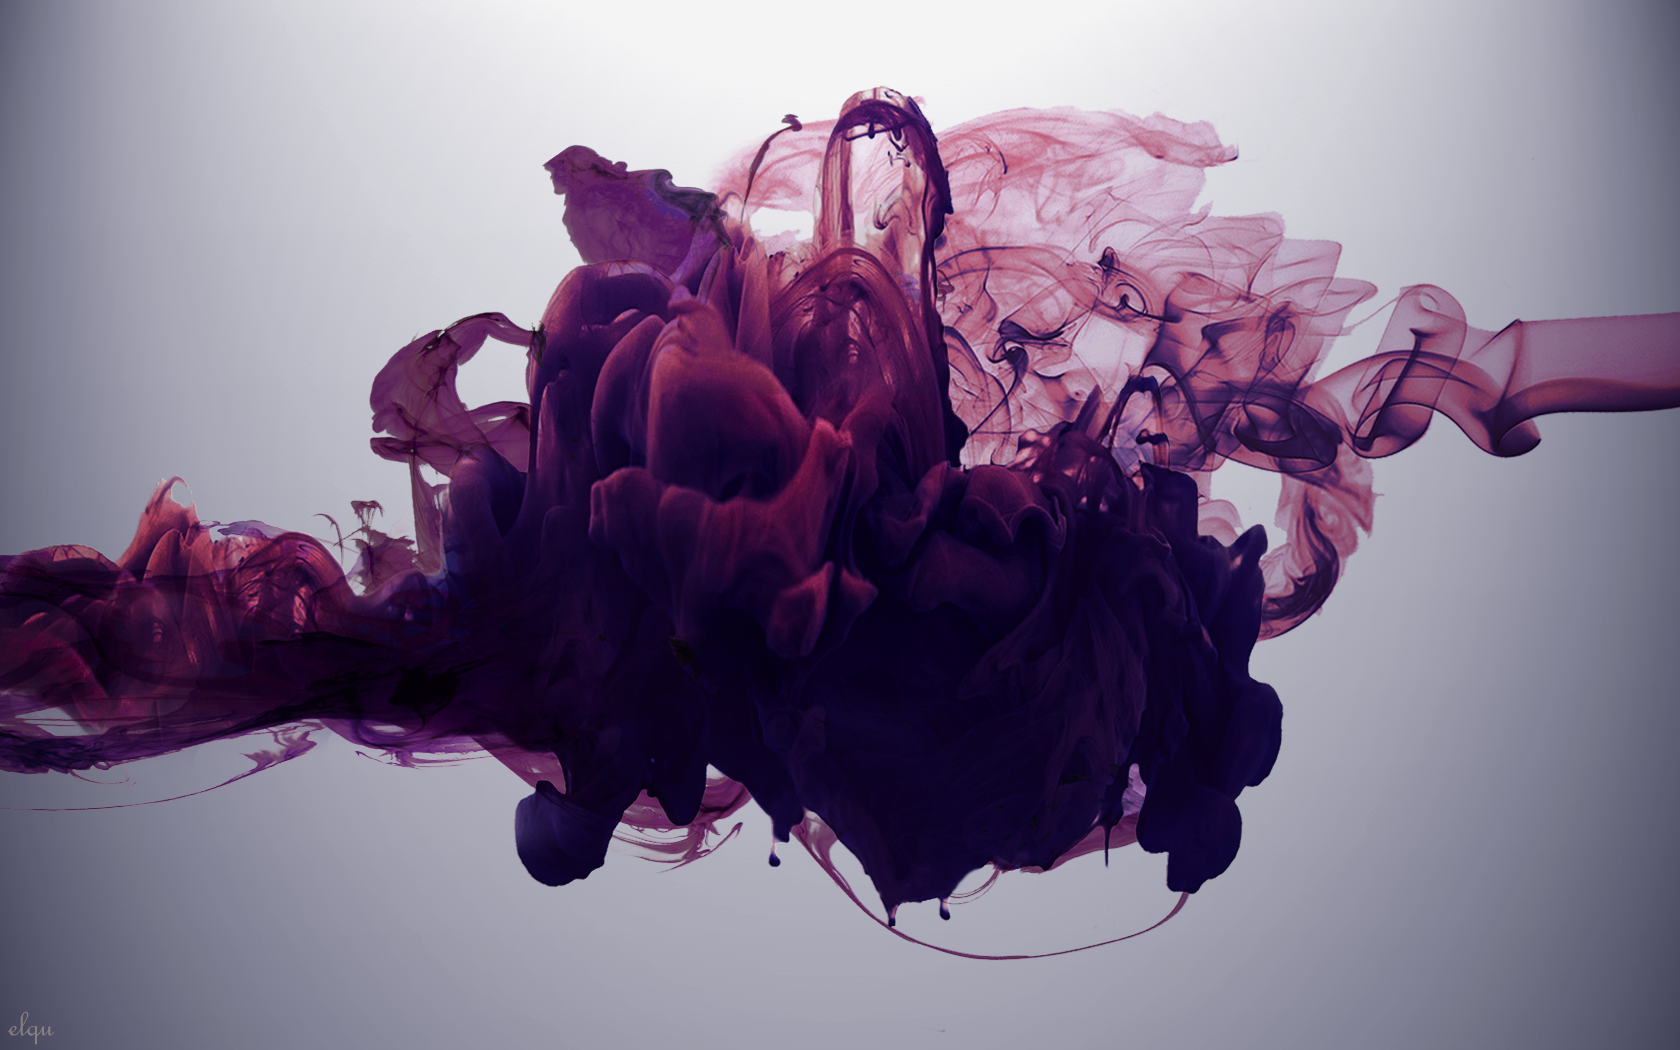 inchiostro in acqua wallpaper hd,viola,viola,rosa,fiore,fotografia di still life